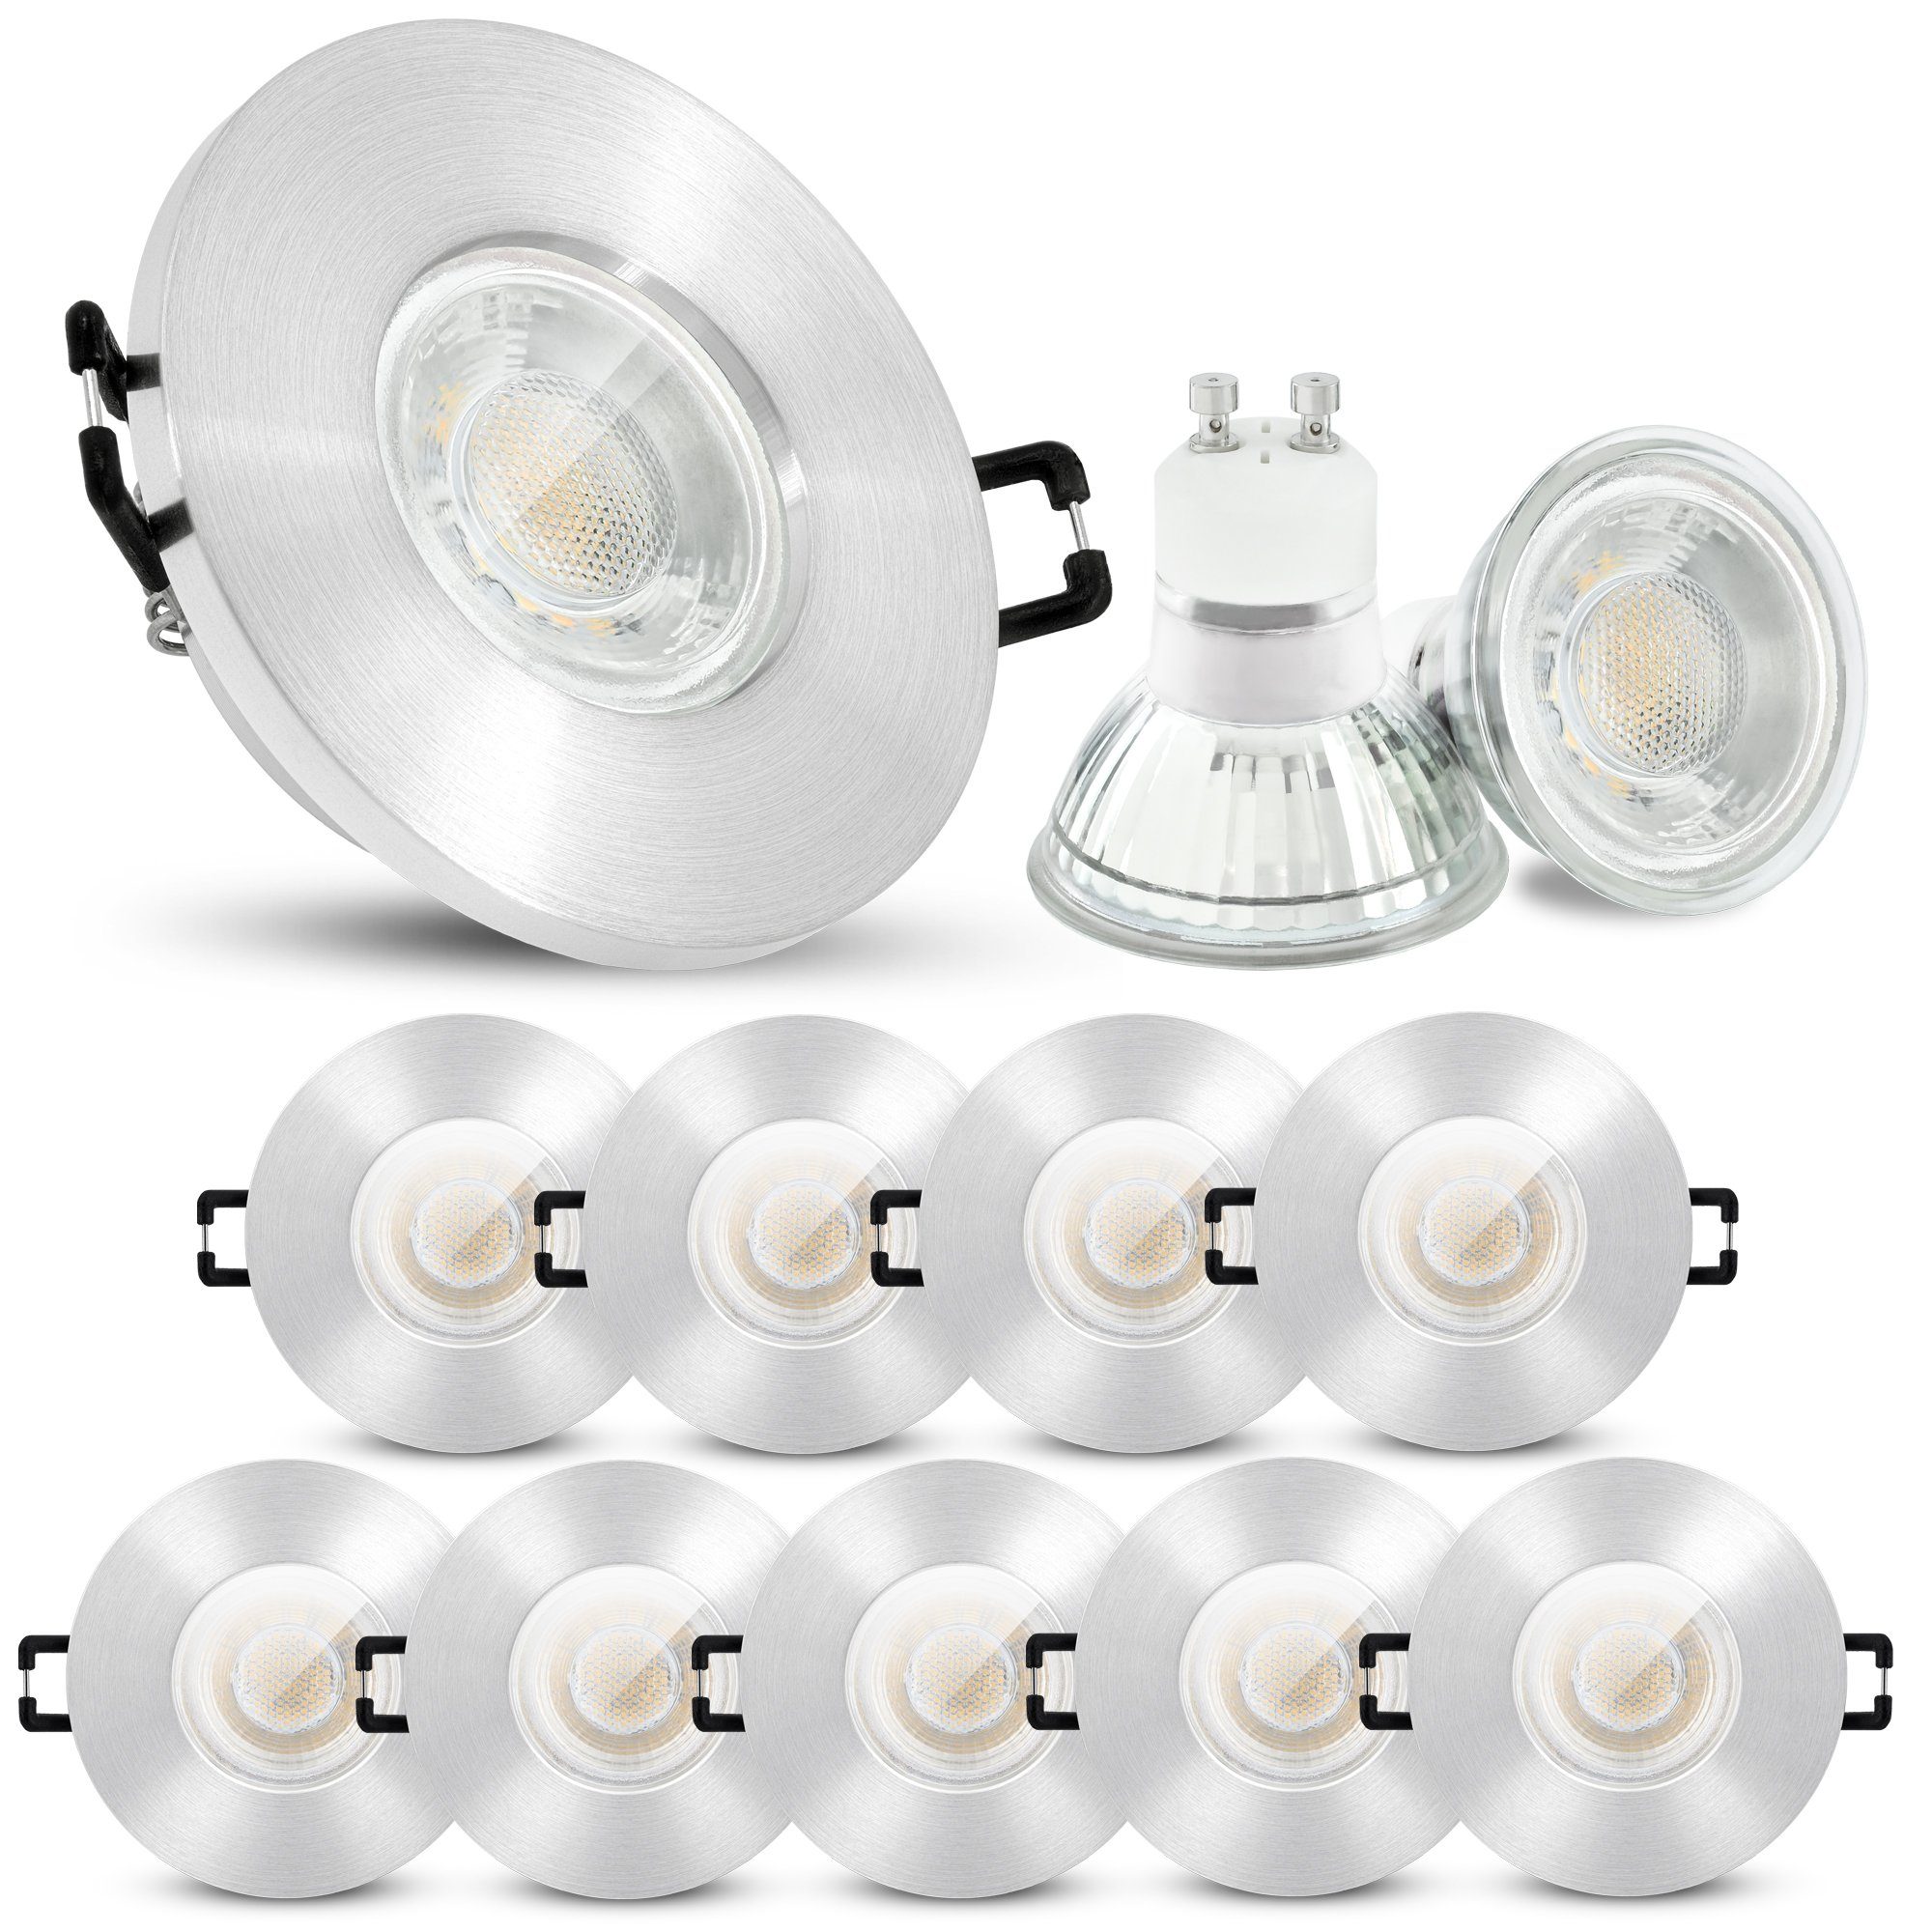 50 x Einbaustrahler starr GU10 LED Decke Strahler Lampe Leuchte Einbauleuchte 